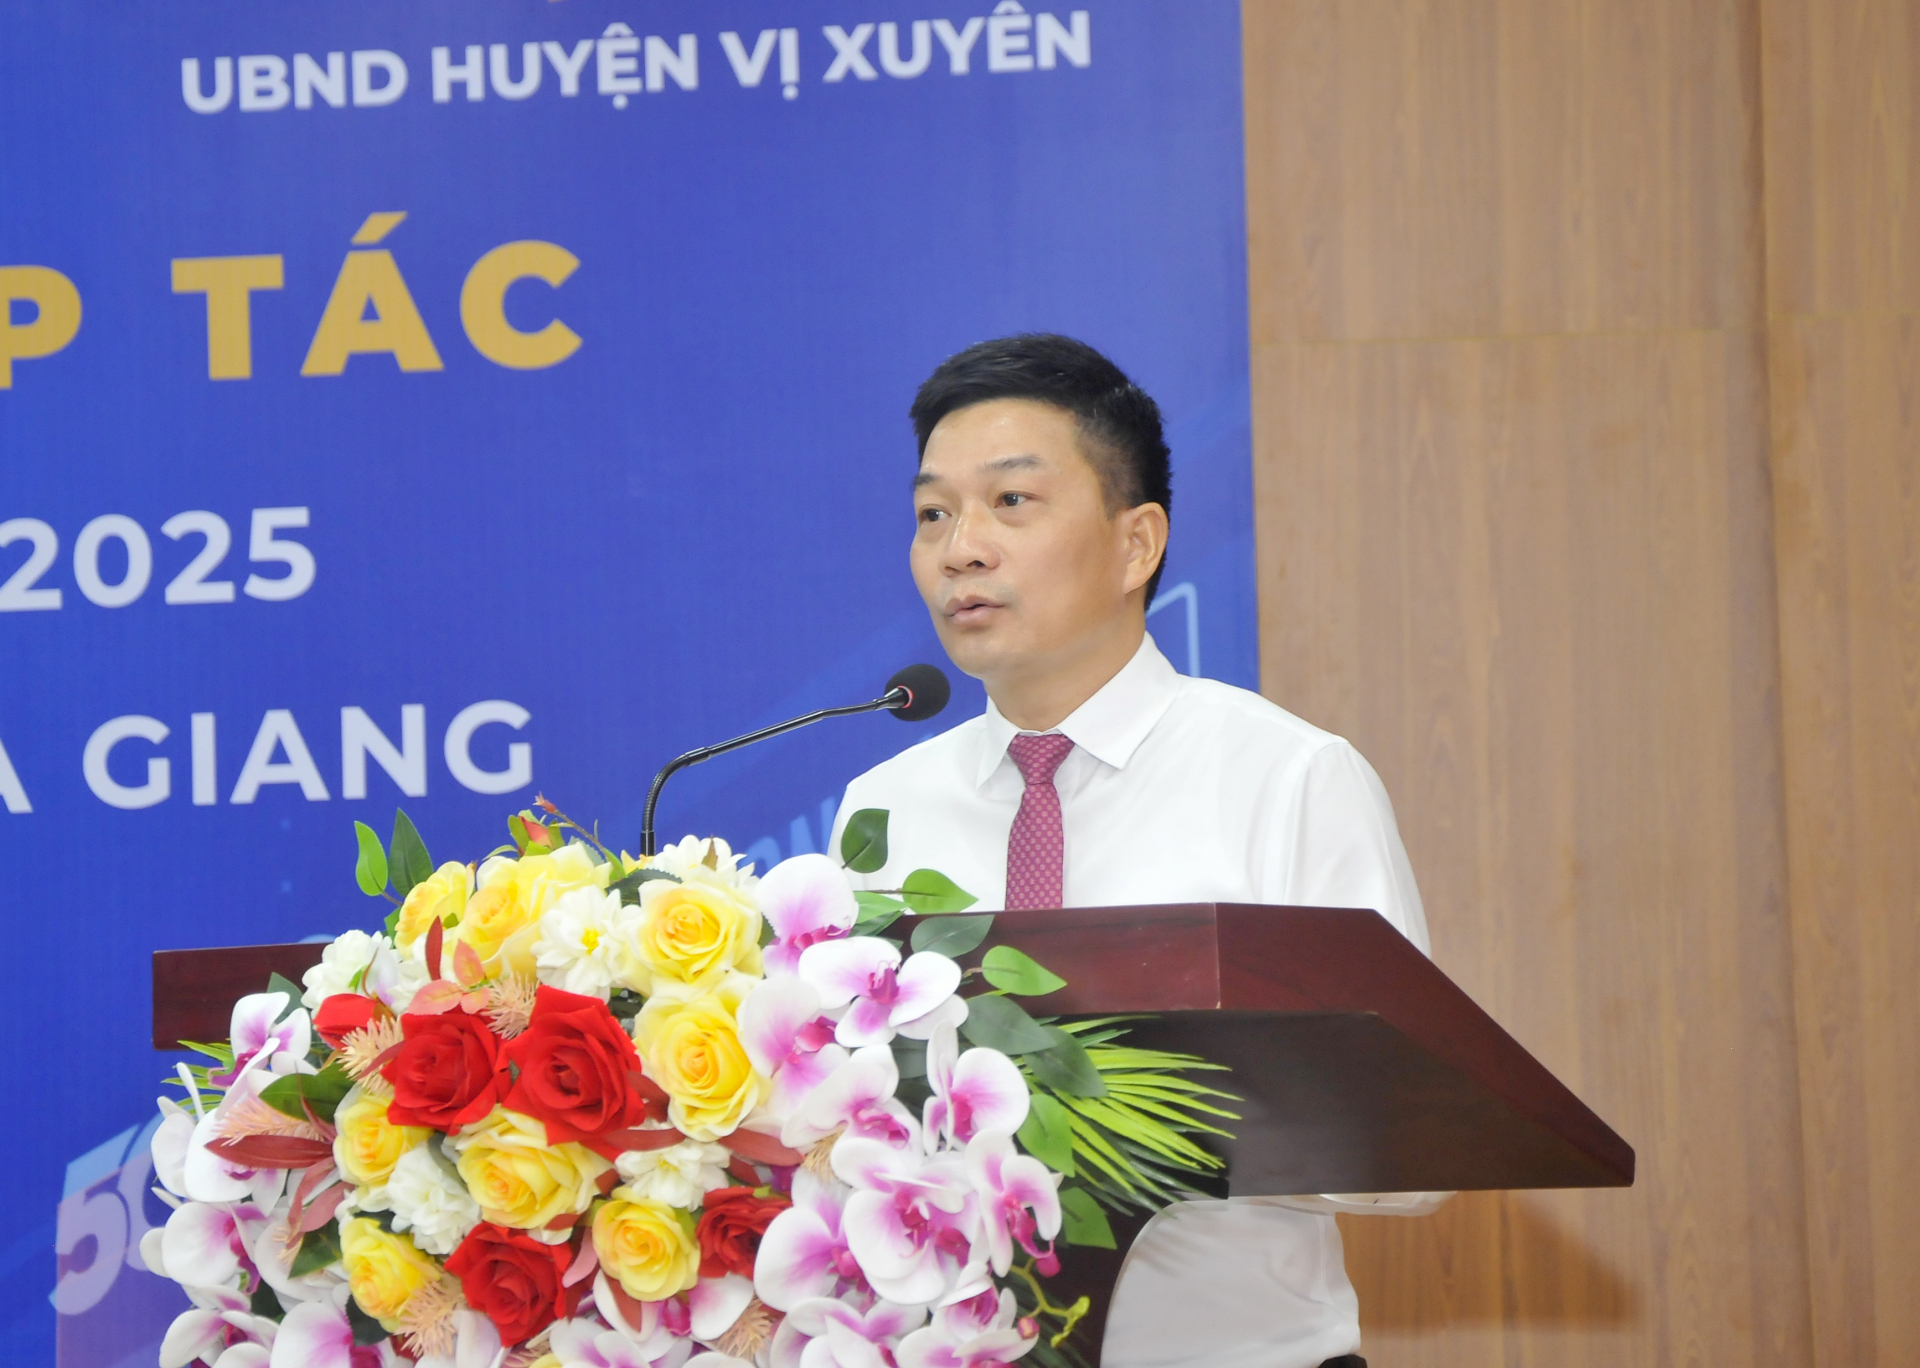 Chủ tịch UBND huyện Vị Xuyên Hoàng Thanh Tịnh phát biểu tại buổi lễ.